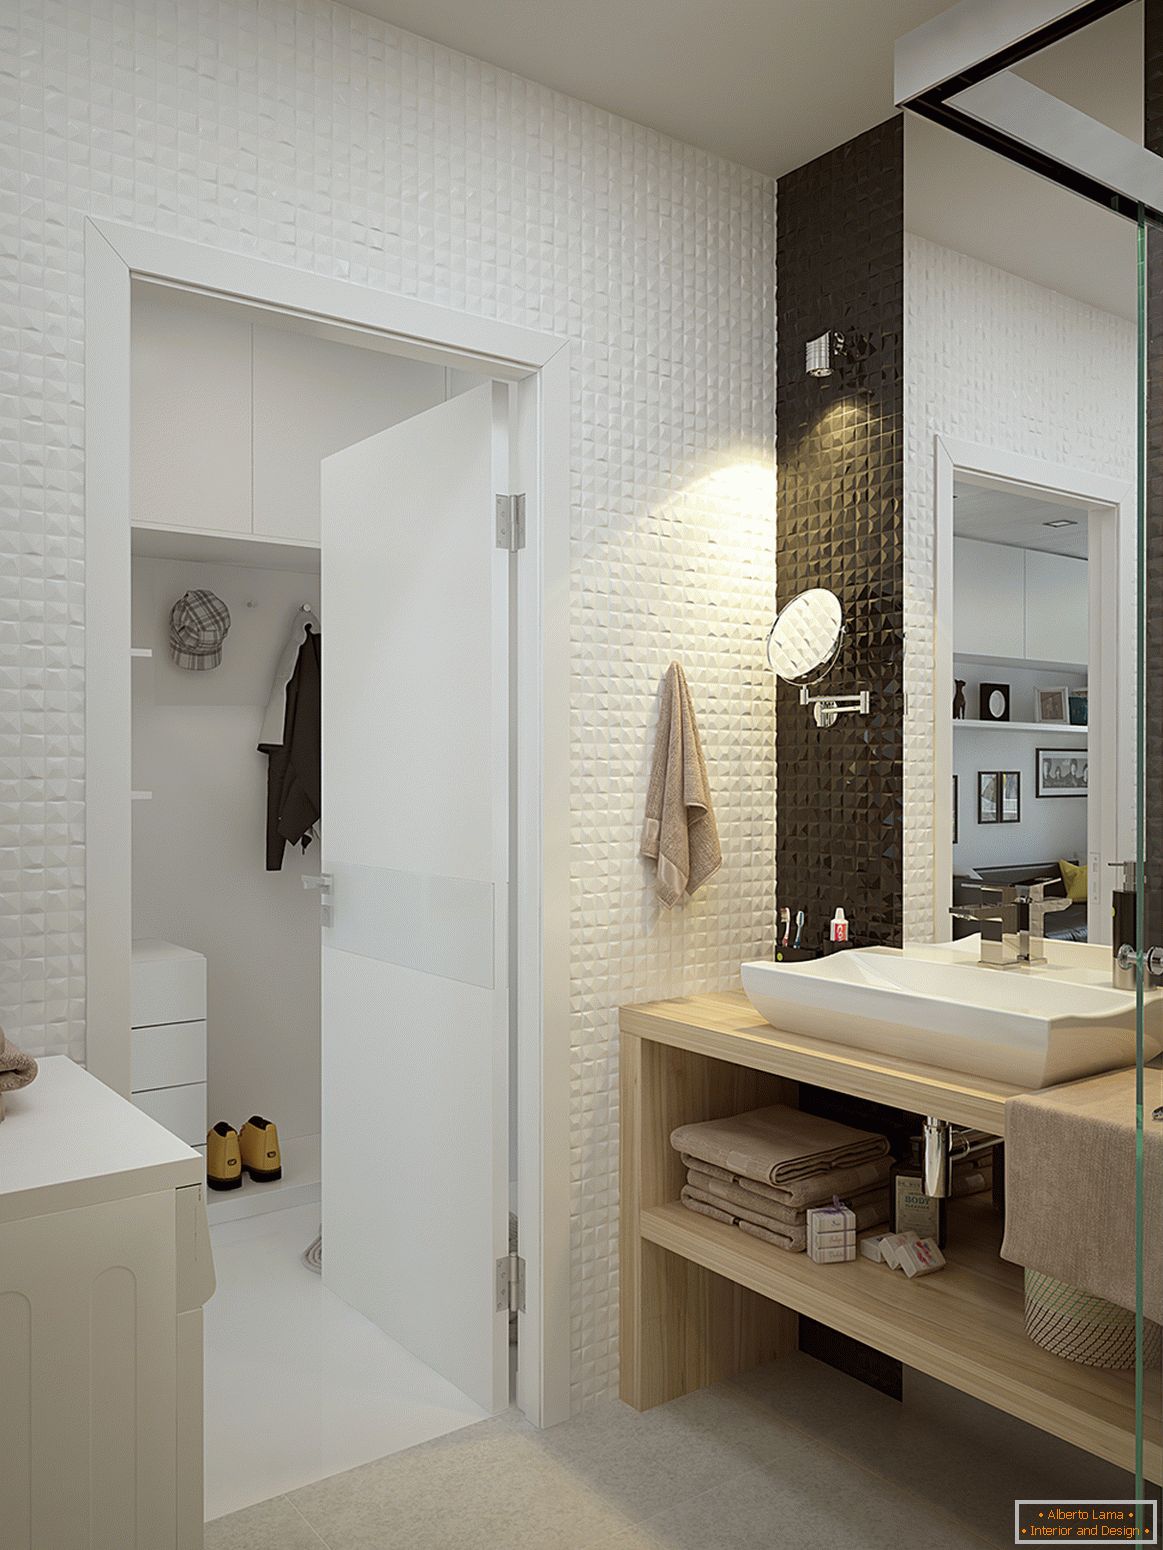 Interiér malého bytu v kontrastných farbách - ванная